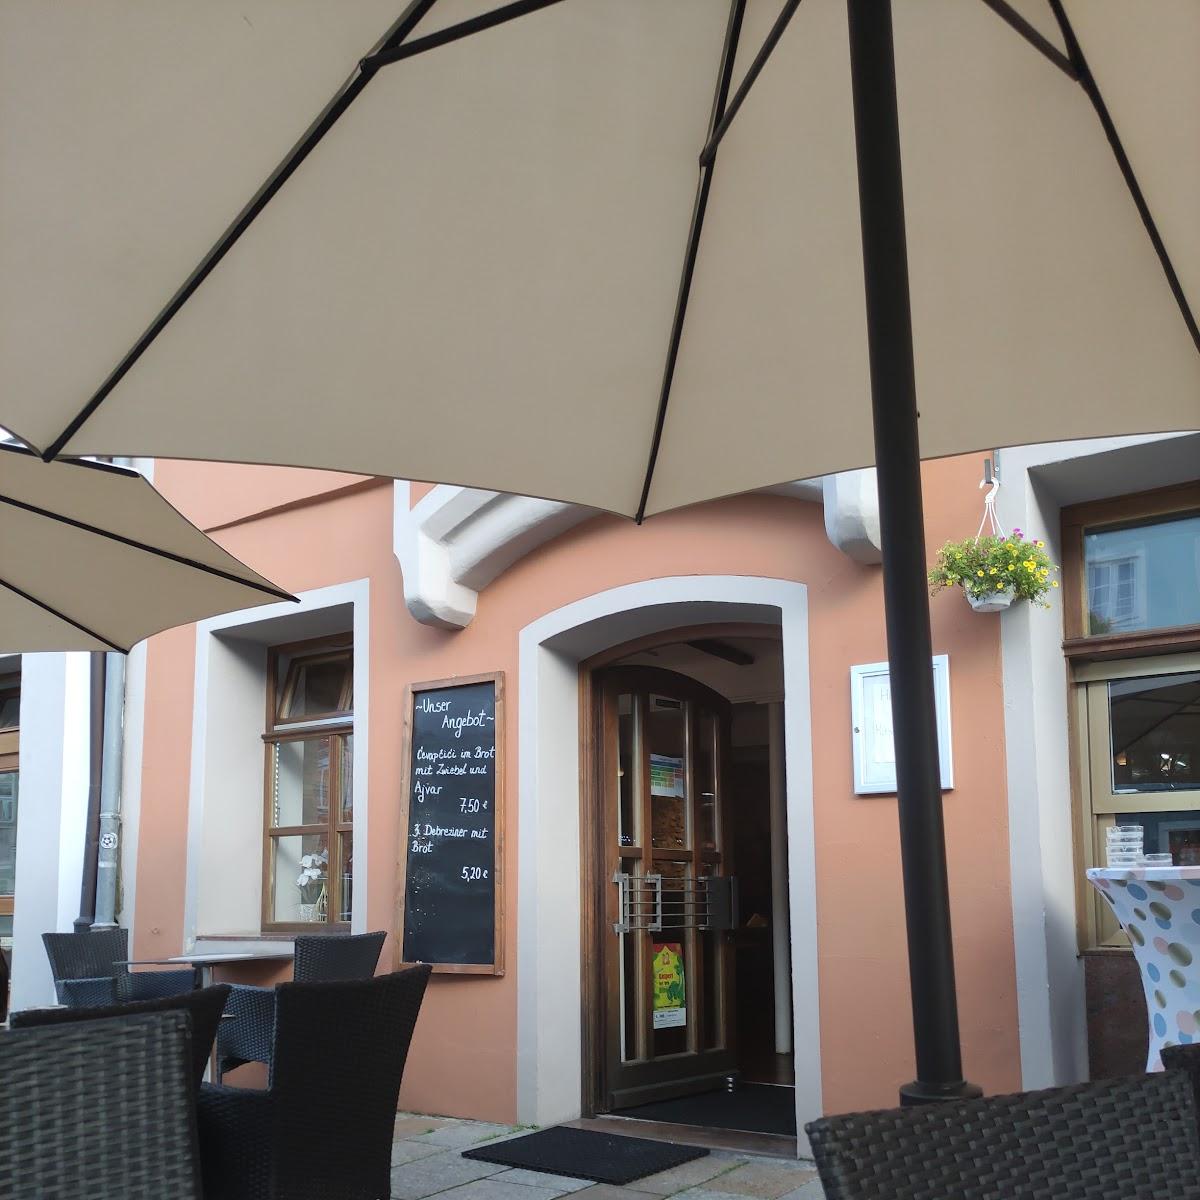 Restaurant "Caf Bistro Meri" in Pfarrkirchen